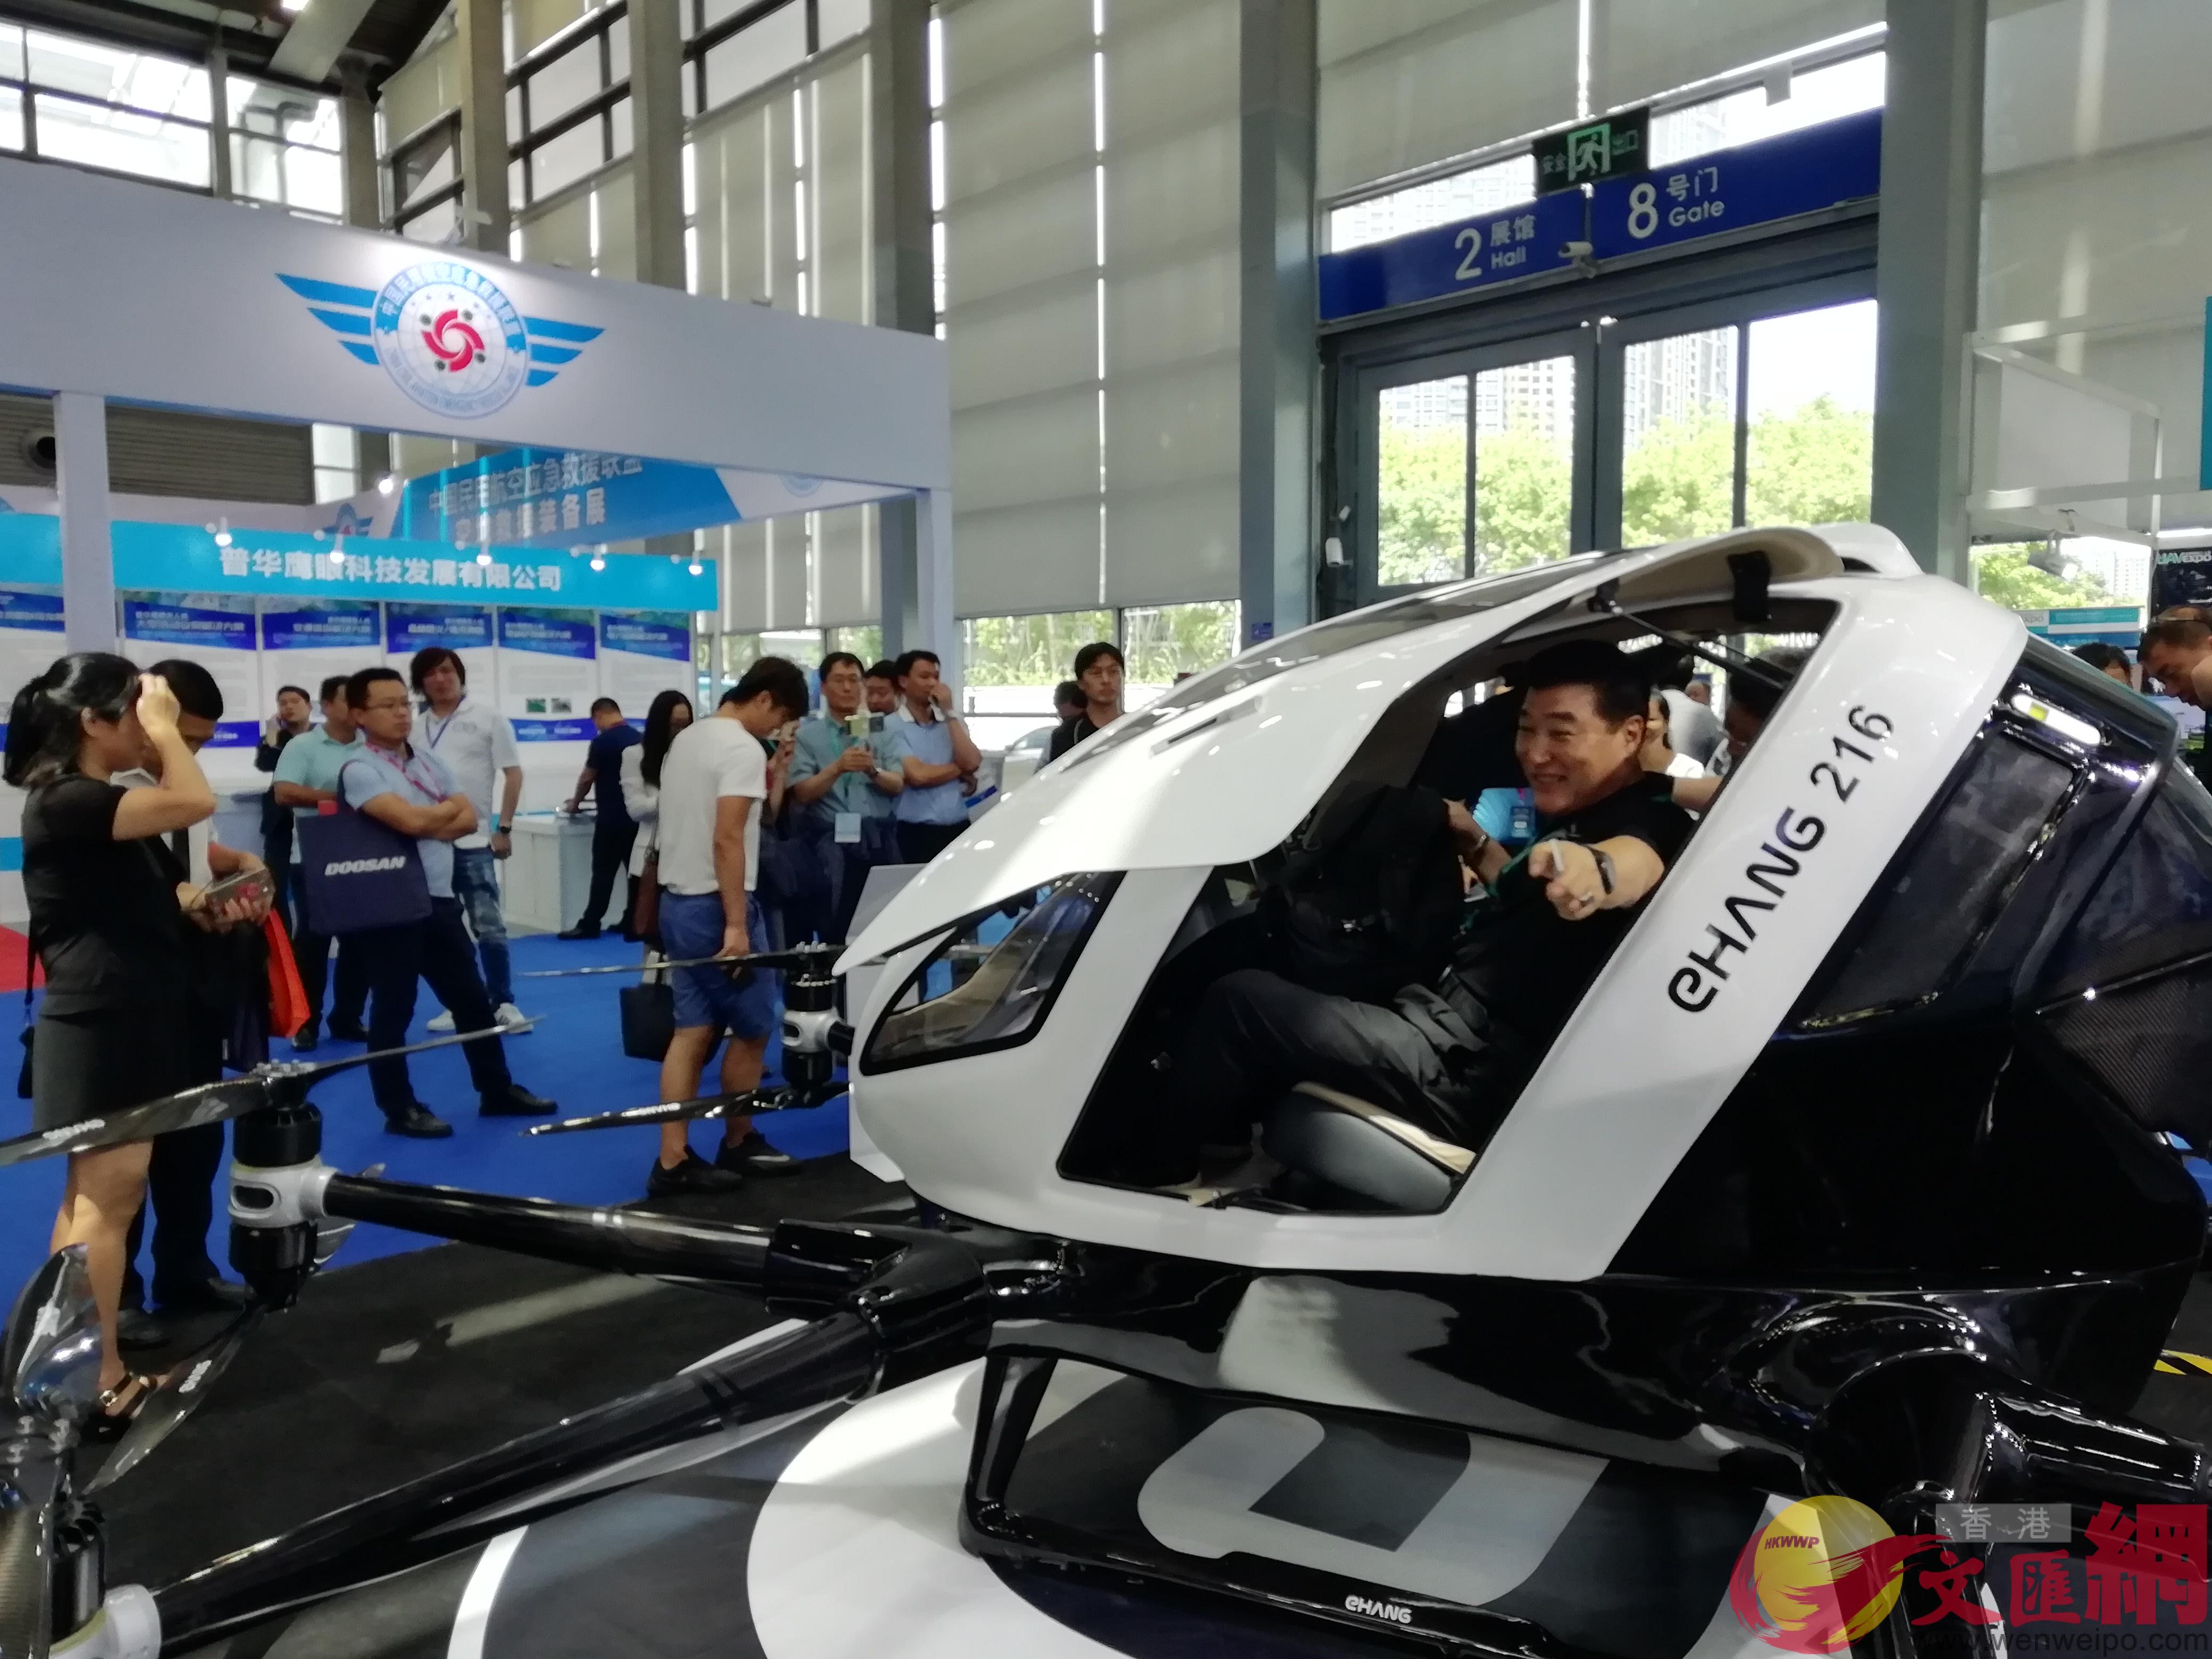 智能無人駕駛飛機吸引了大量觀眾紛紛前來體驗C記者 李昌鴻 攝